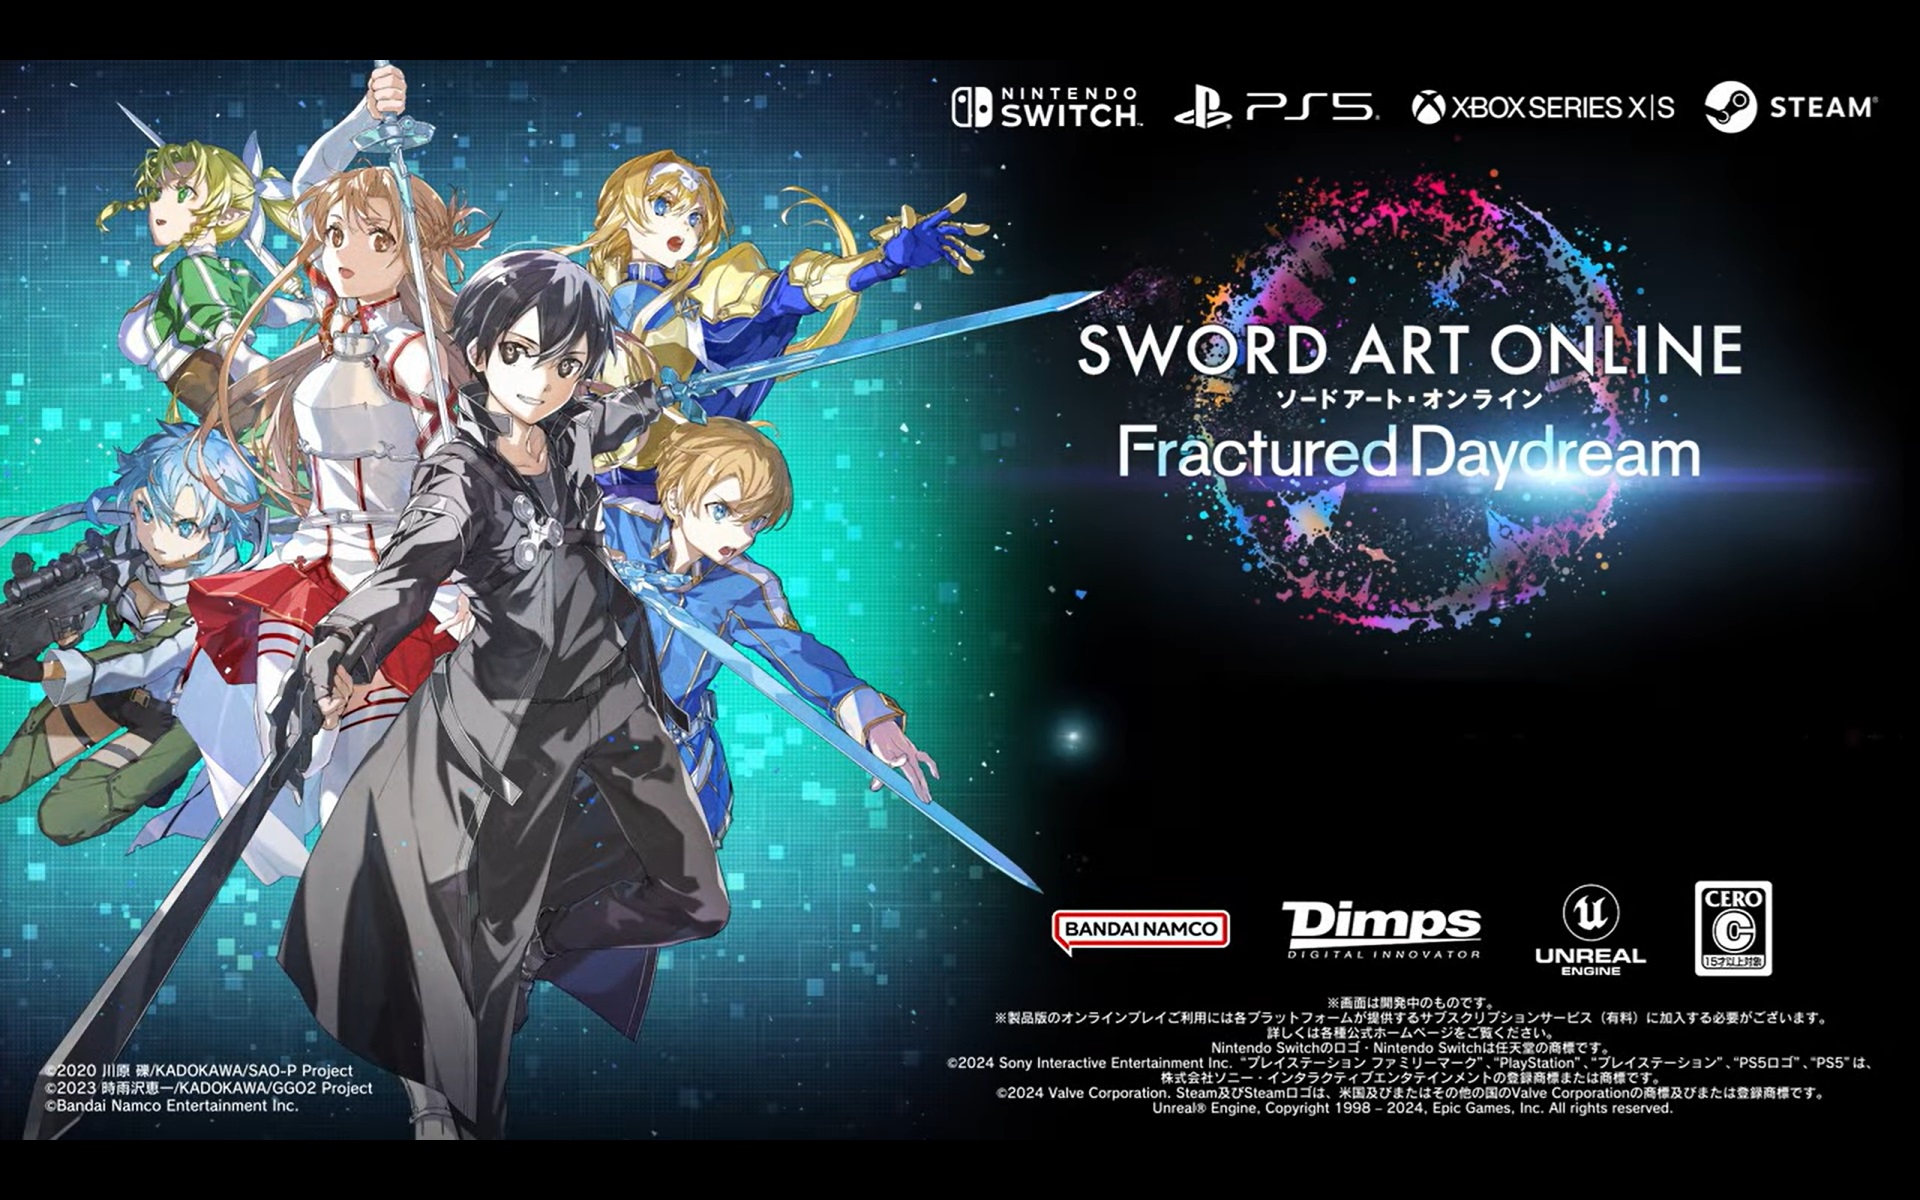 Sword Art Online Fractured Daydream release date